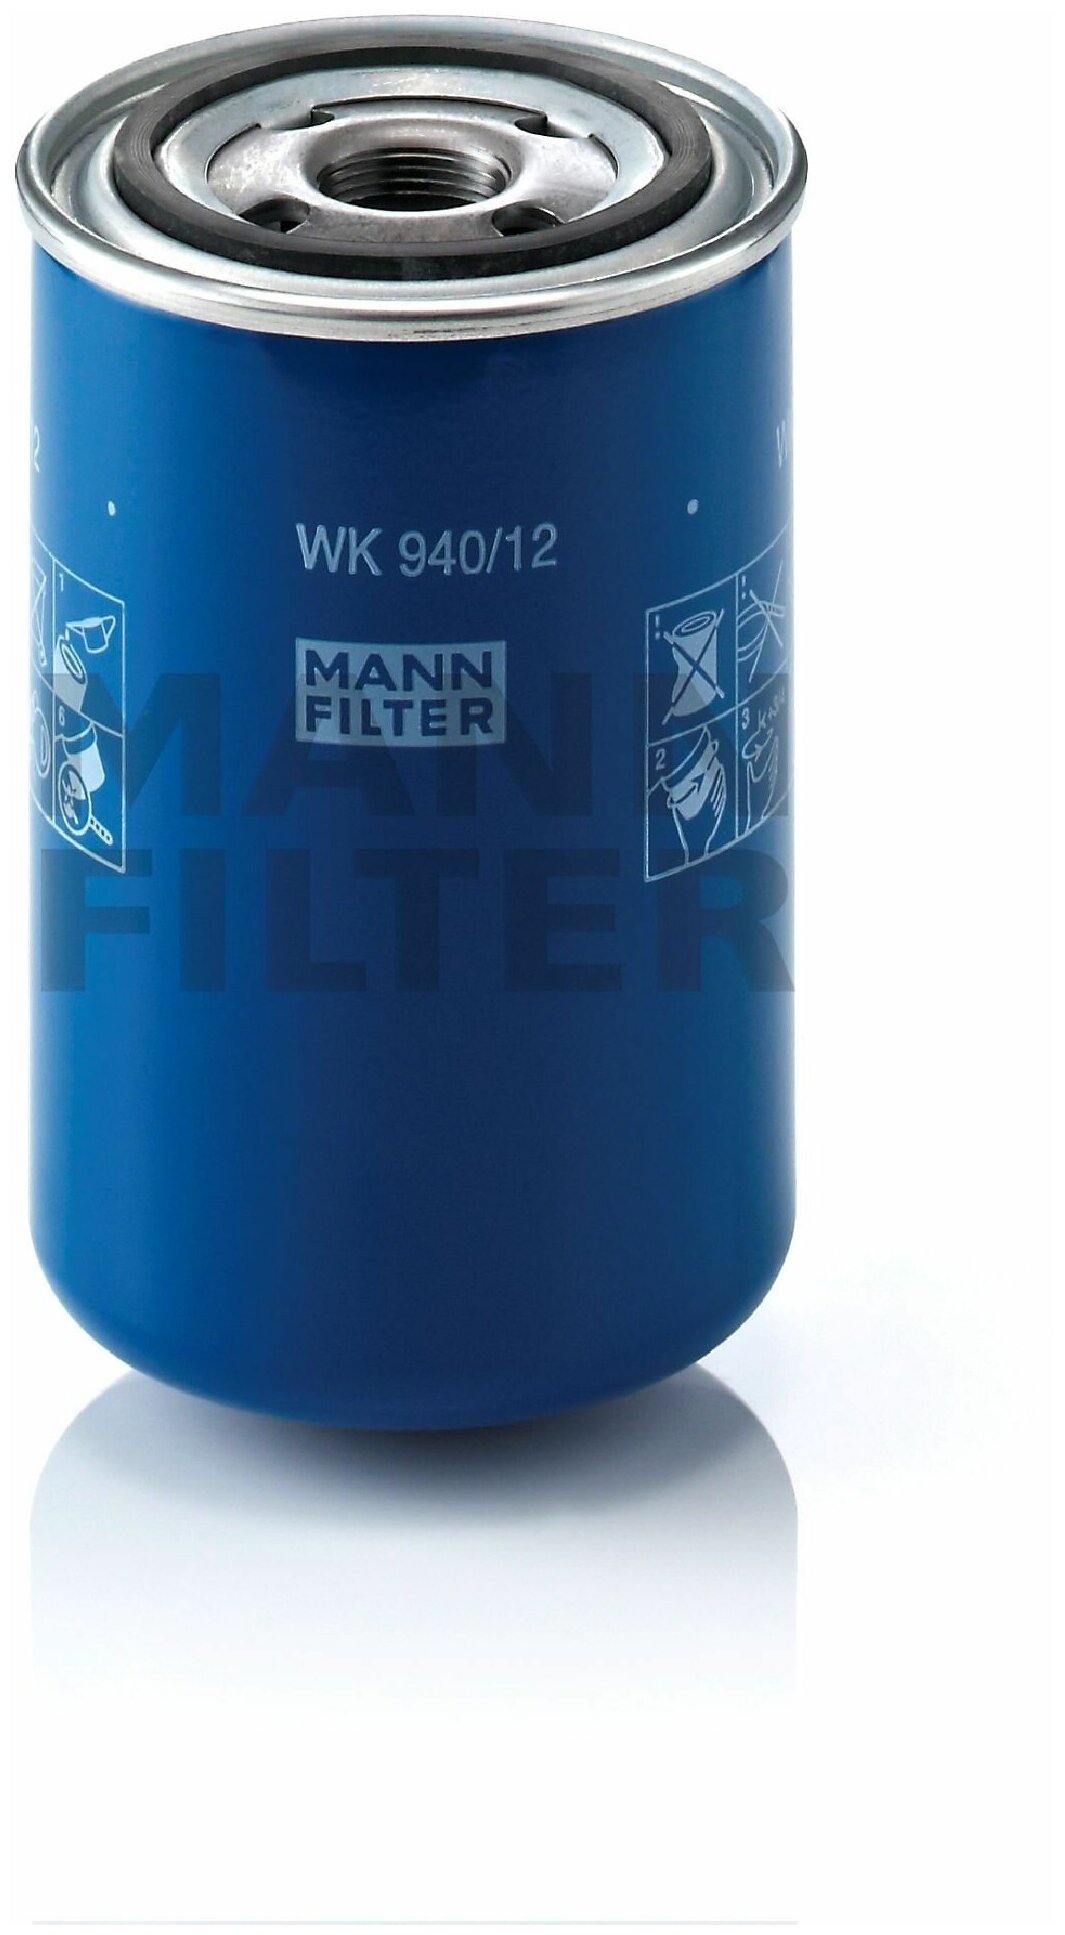 Фильтр топливный MANN-FILTER WK 940/12 (WK94012)